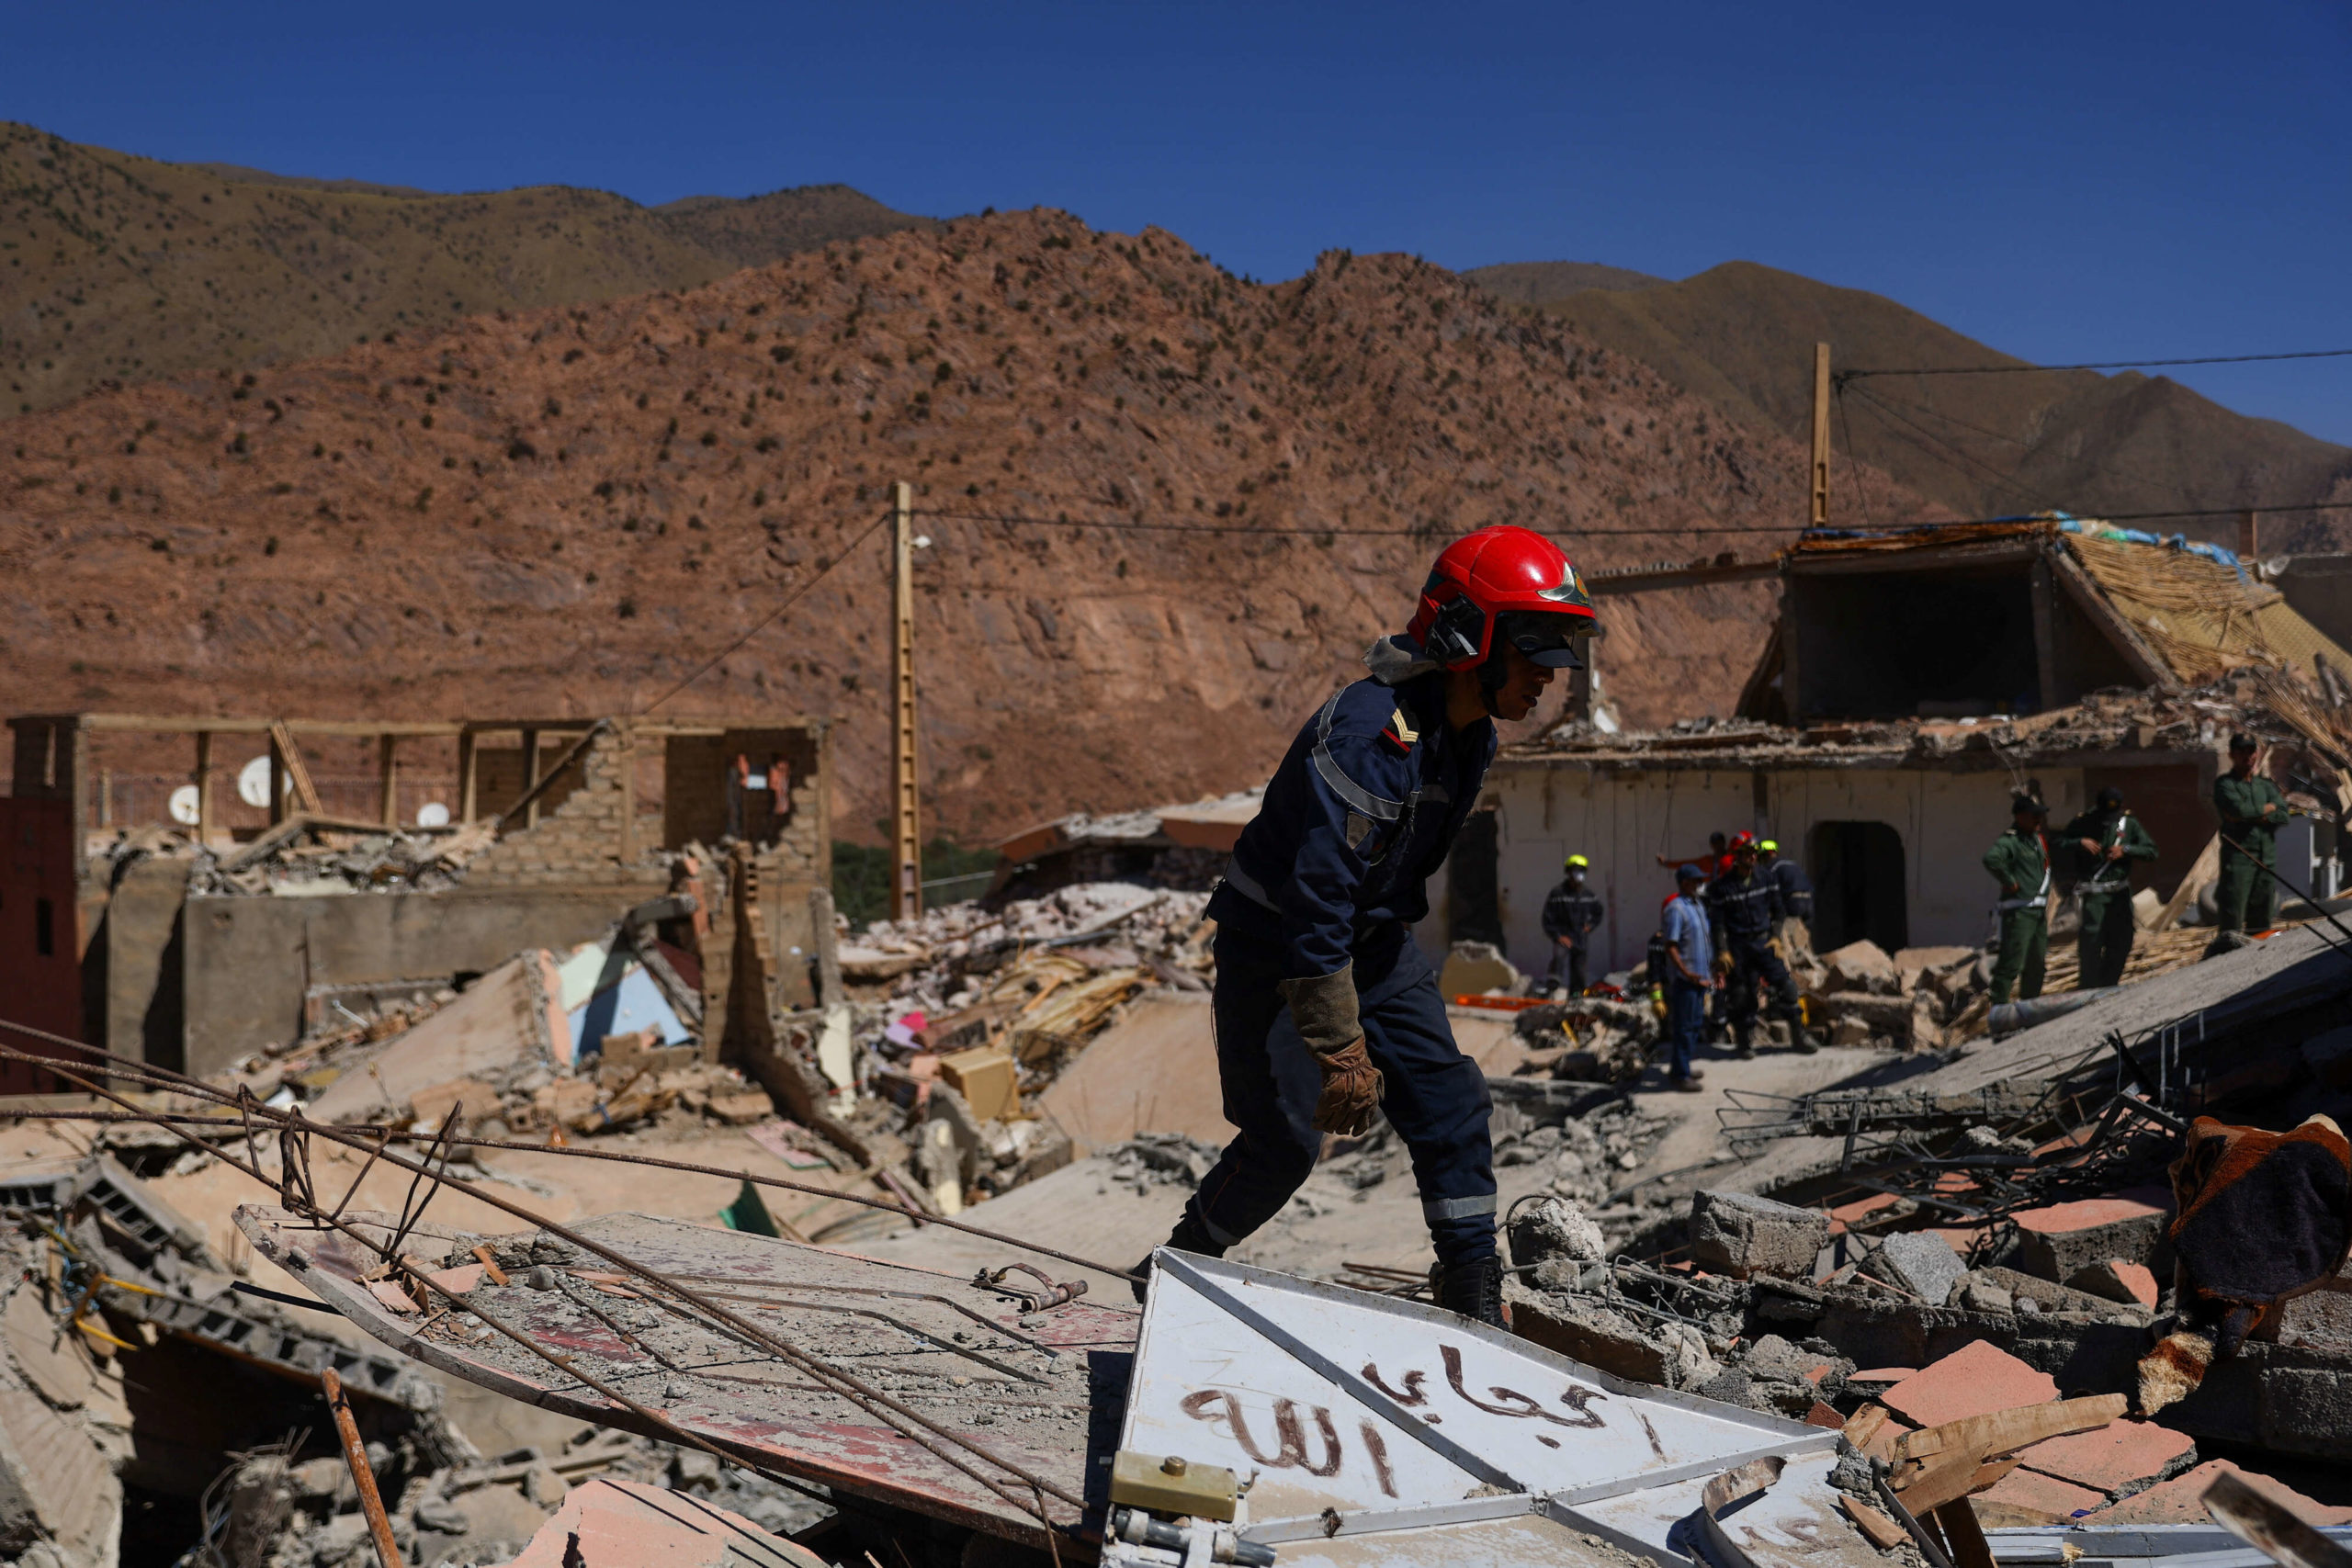 منقذون يسابقون الزمن للعثور على ناجين من زلزال المغرب